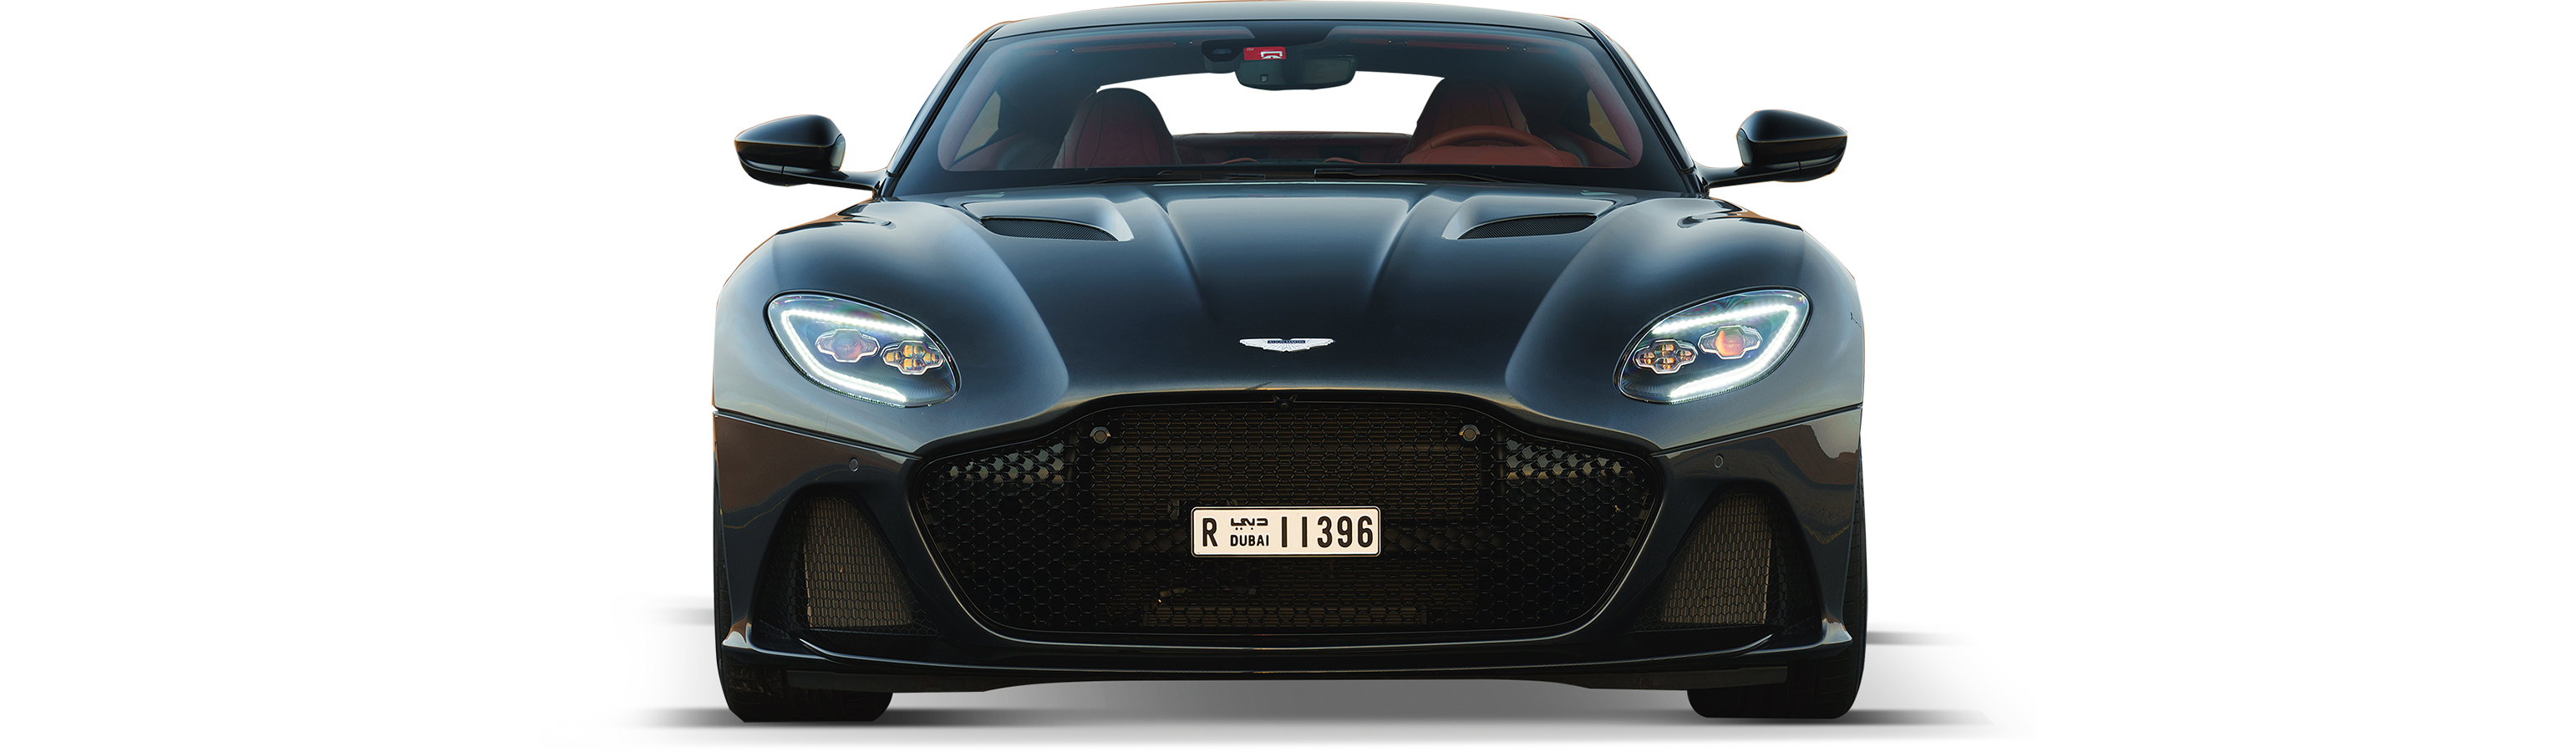 Aston Martin DBS Coupé Superleggera